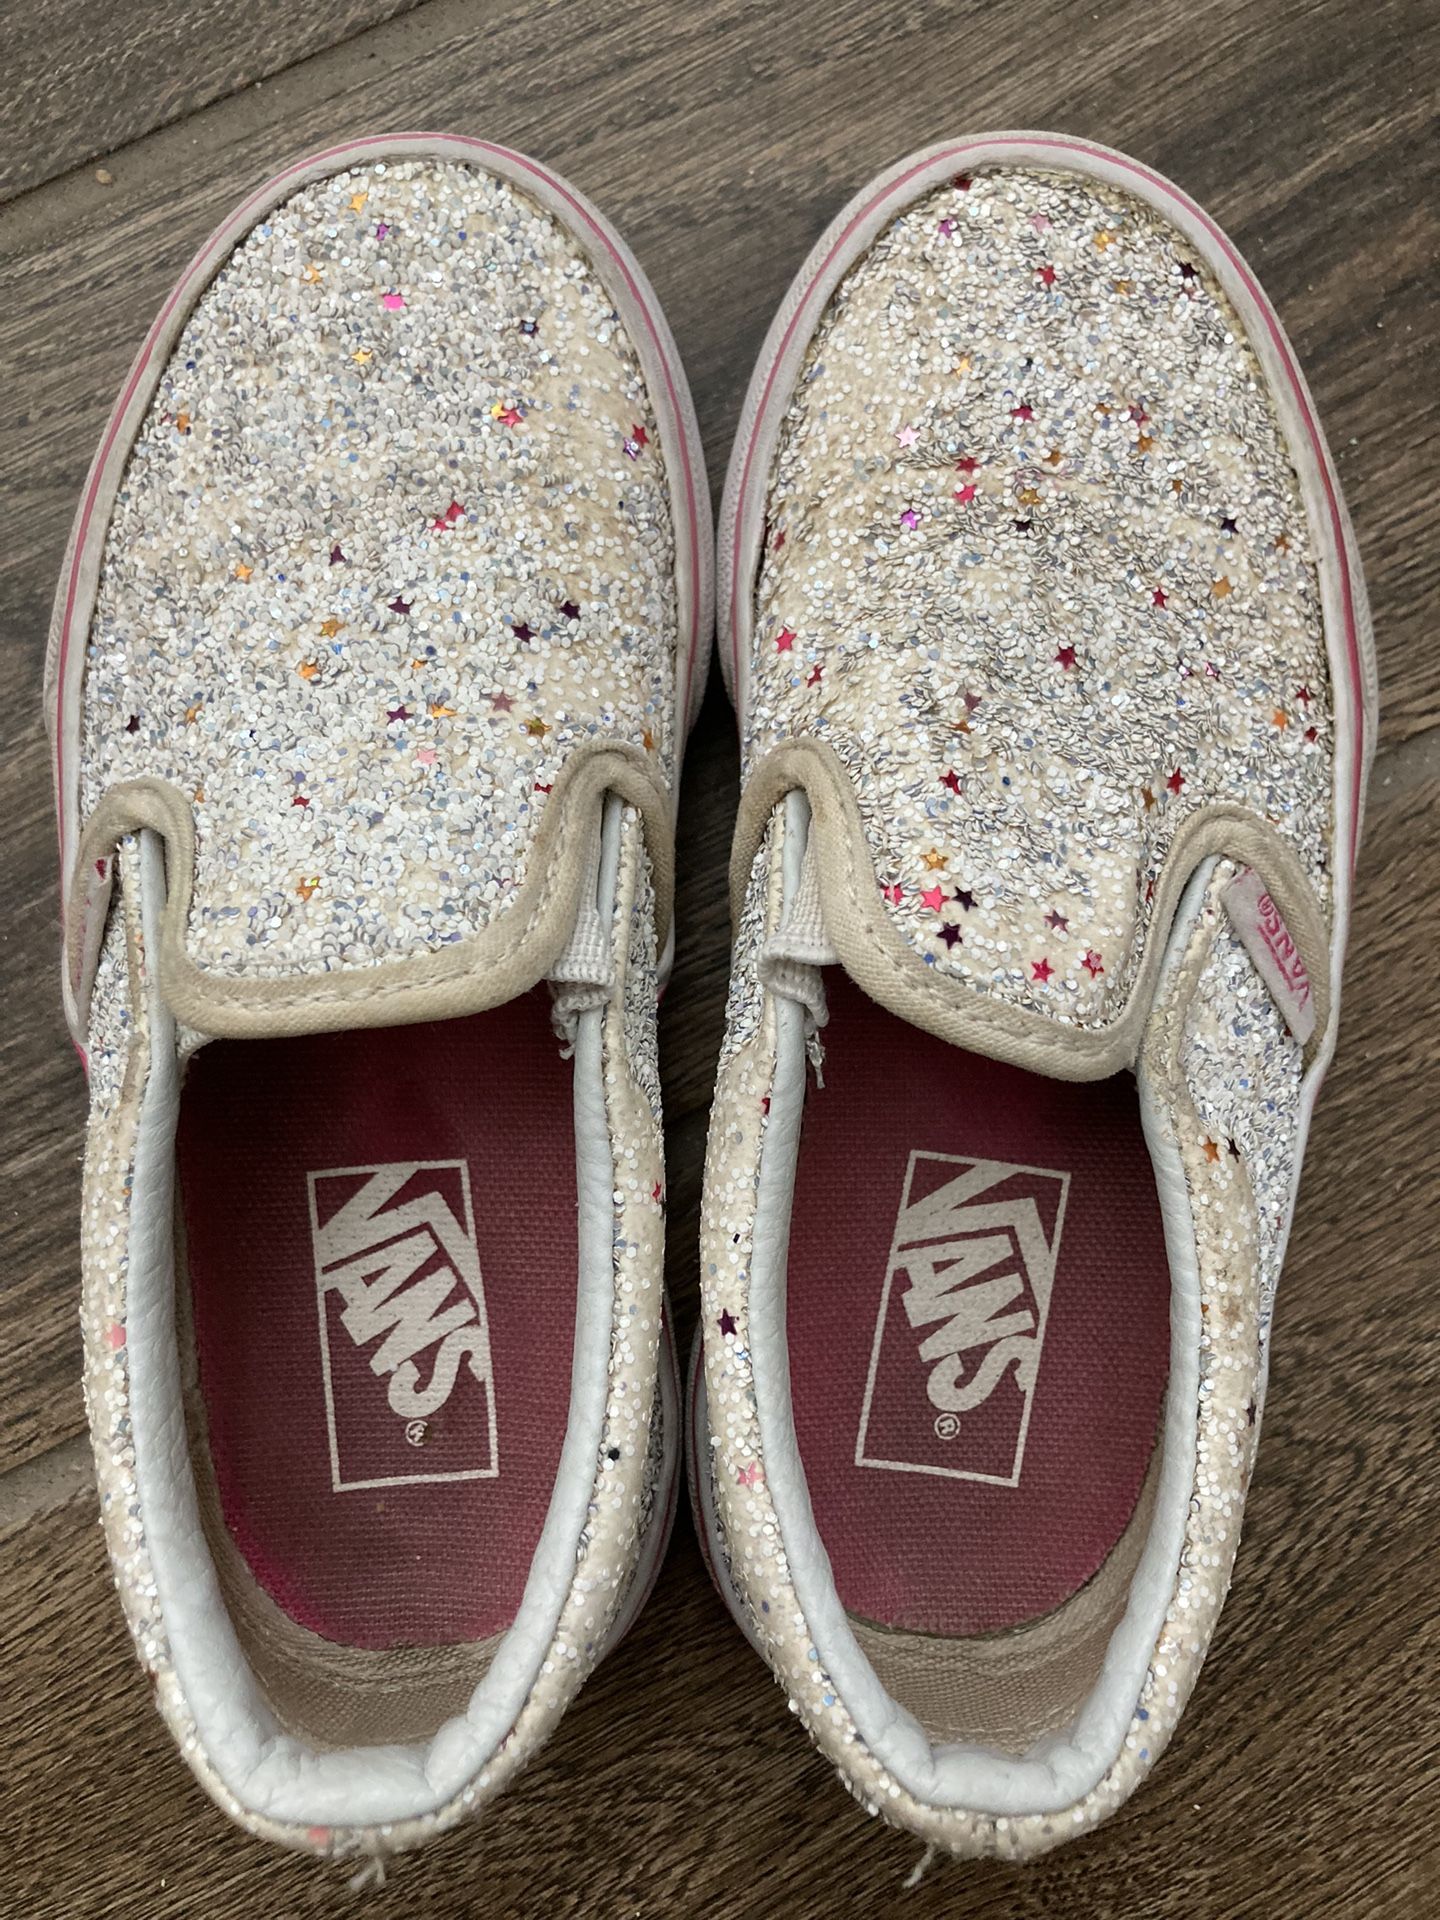 Vans Glitter White Kids Shoes Size 11